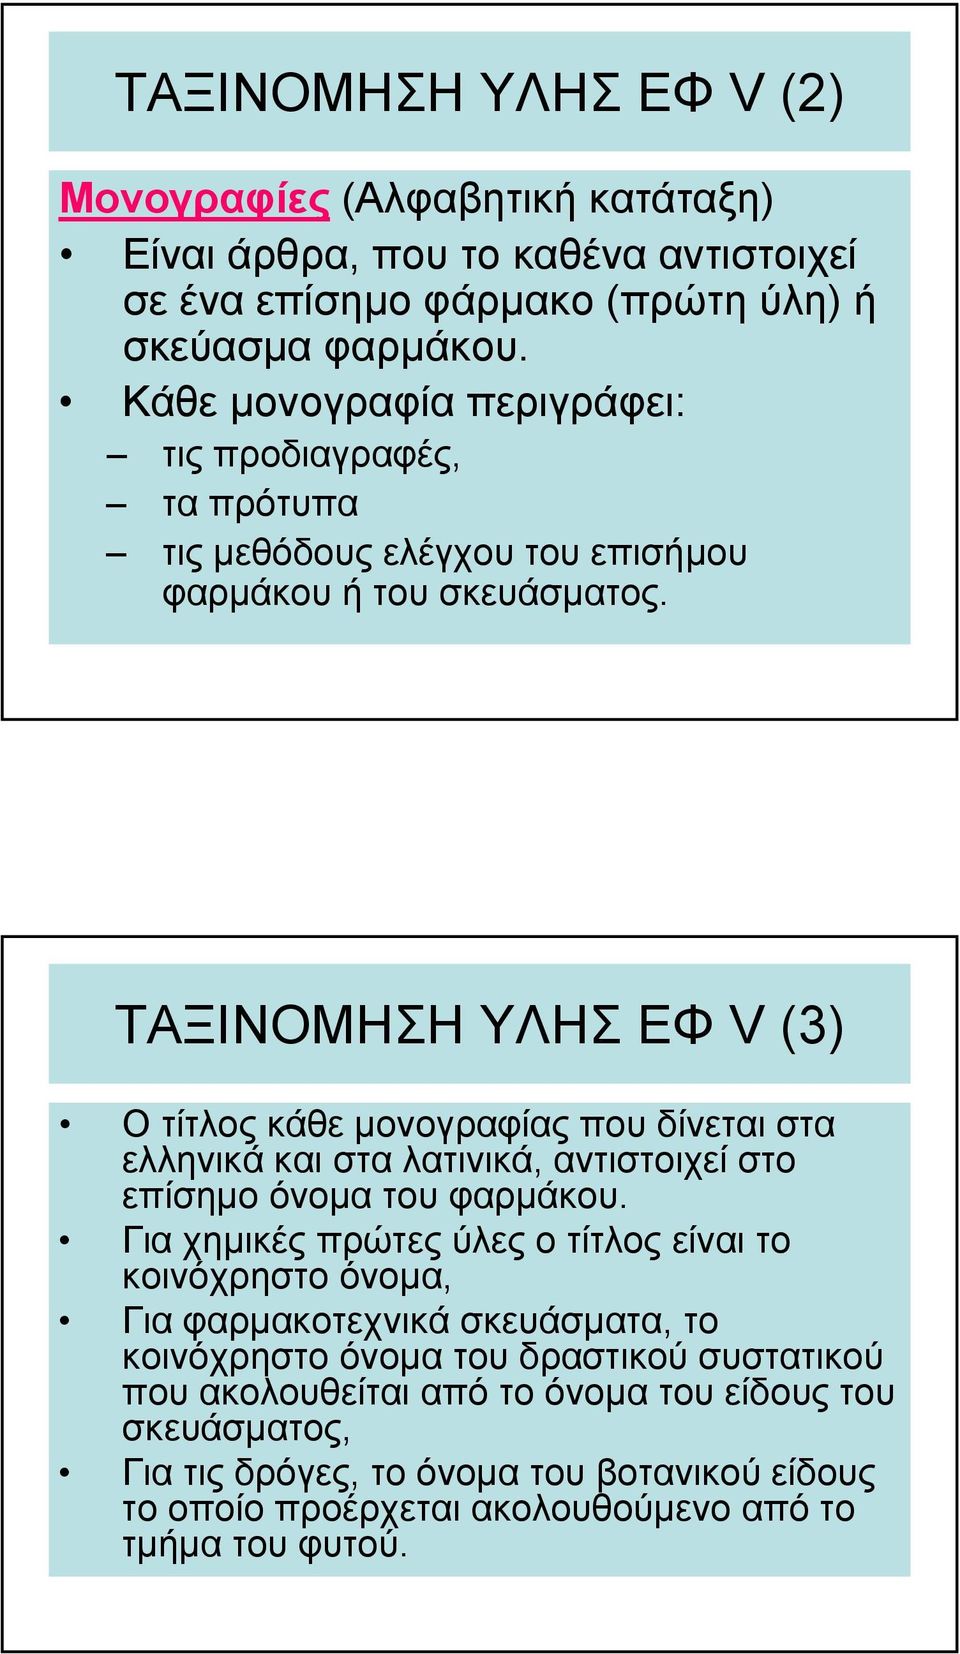 ΤΑΞΙΝΟΜΗΣΗ ΥΛΗΣ ΕΦ V(3) Οτίτλοςκάθεµονογραφίας που δίνεται στα ελληνικά και στα λατινικά, αντιστοιχεί στο επίσηµο όνοµα τουφαρµάκου.